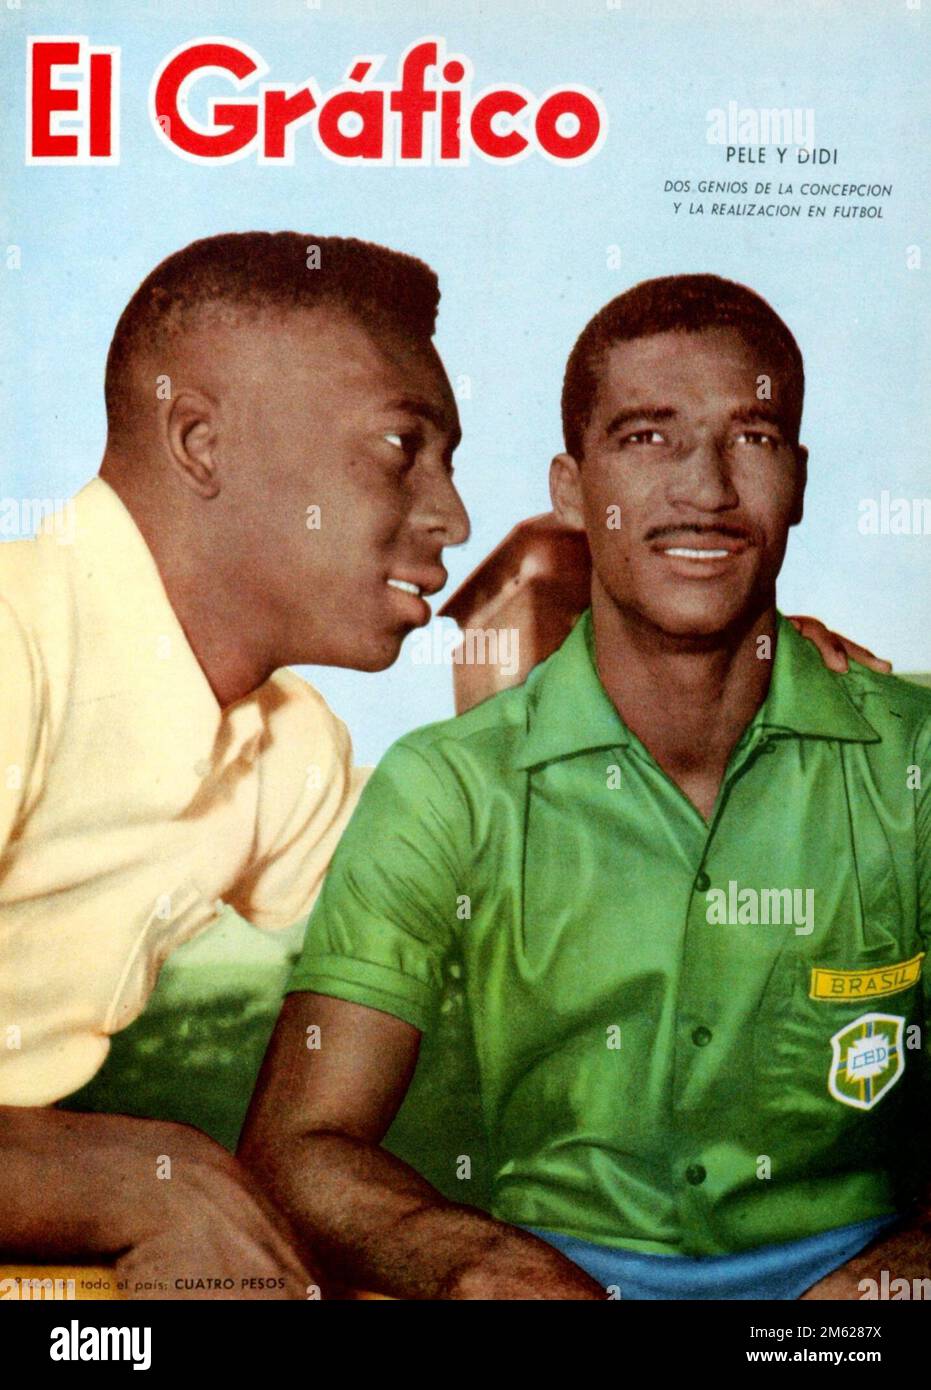 Couverture de magazine Pelé y Didí (Selecionado de Brasil) - El Gráfico, 1959 Banque D'Images